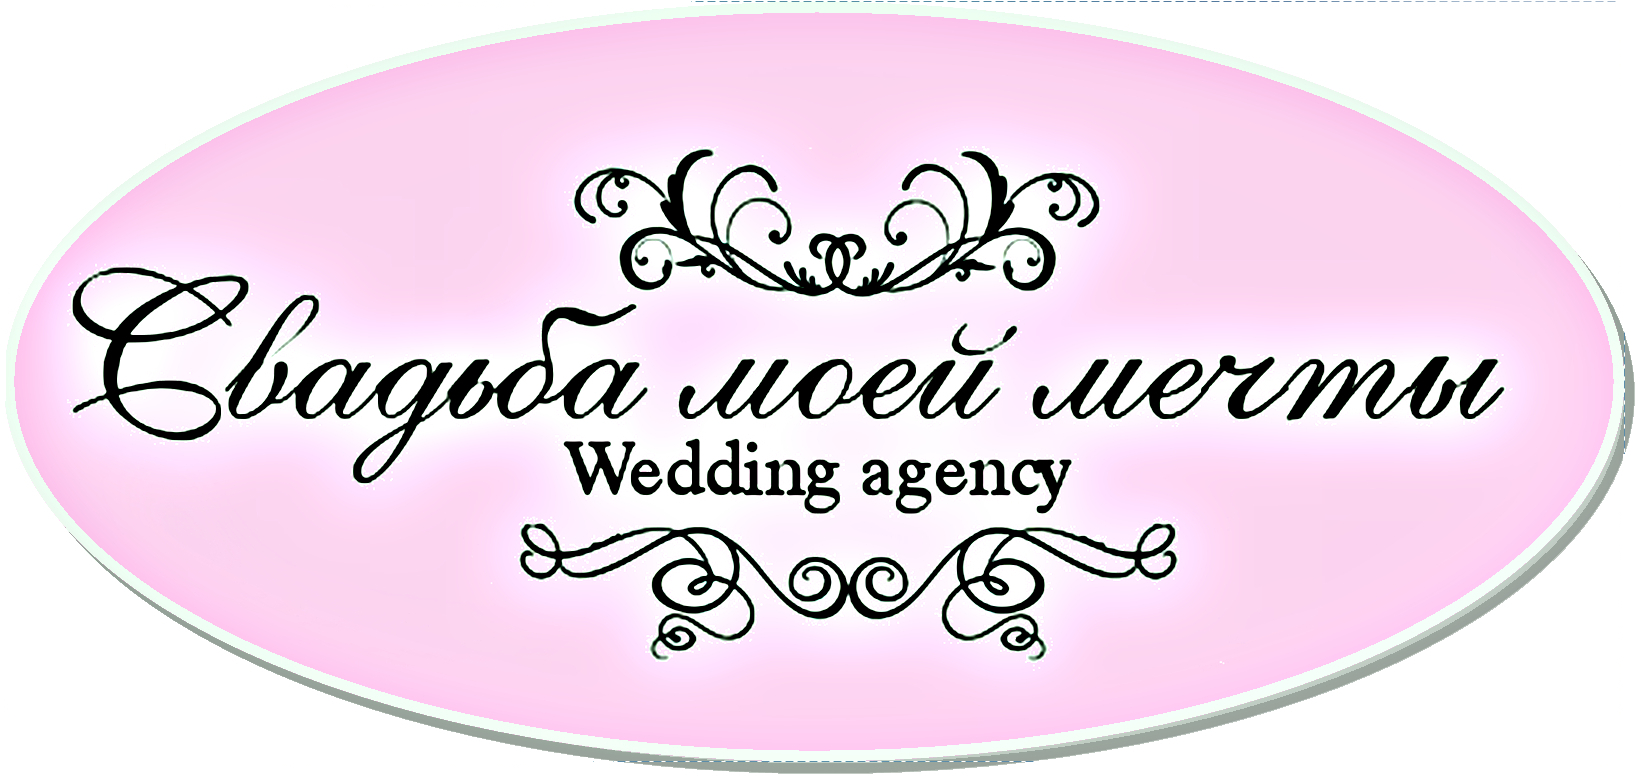 Свадьба моей мечты, Свадебное агентство: отзывы от сотрудников и партнеров